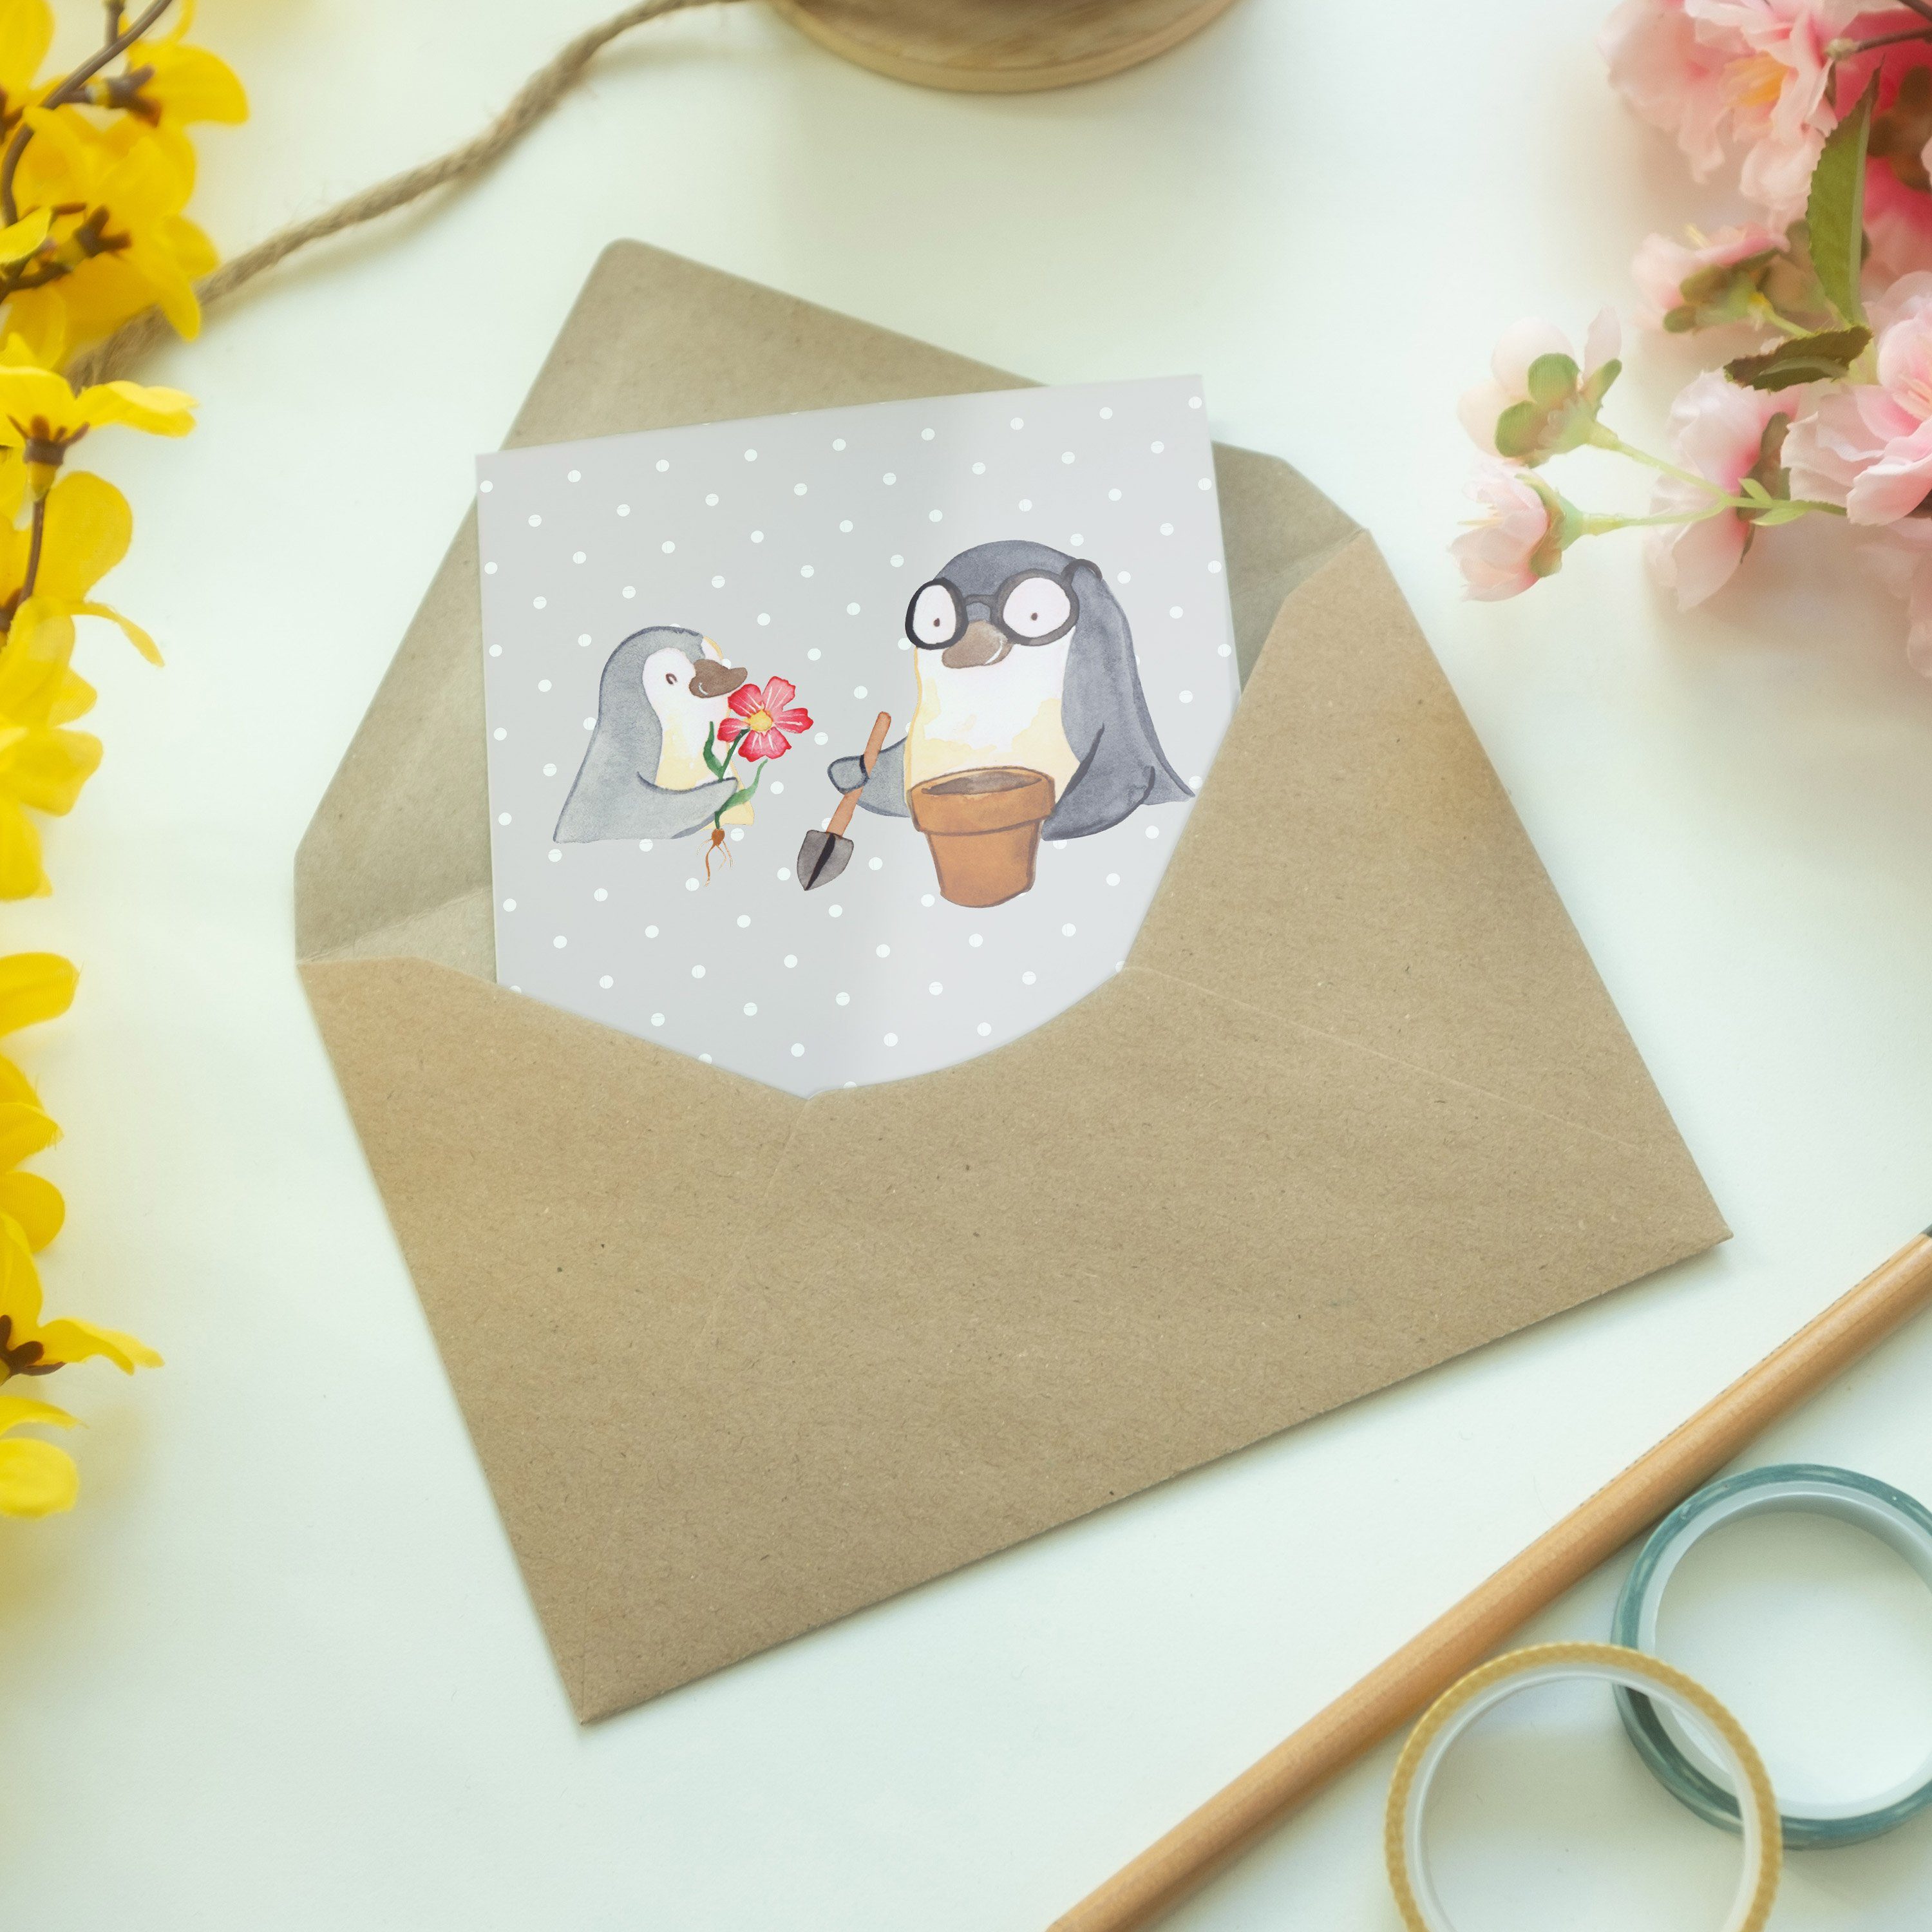 Bester Grau Panda - Welt Mr. Opi & - der Mrs. Geschenk, Pinguin Oppi, Pastell Grußkarte Hochzeit